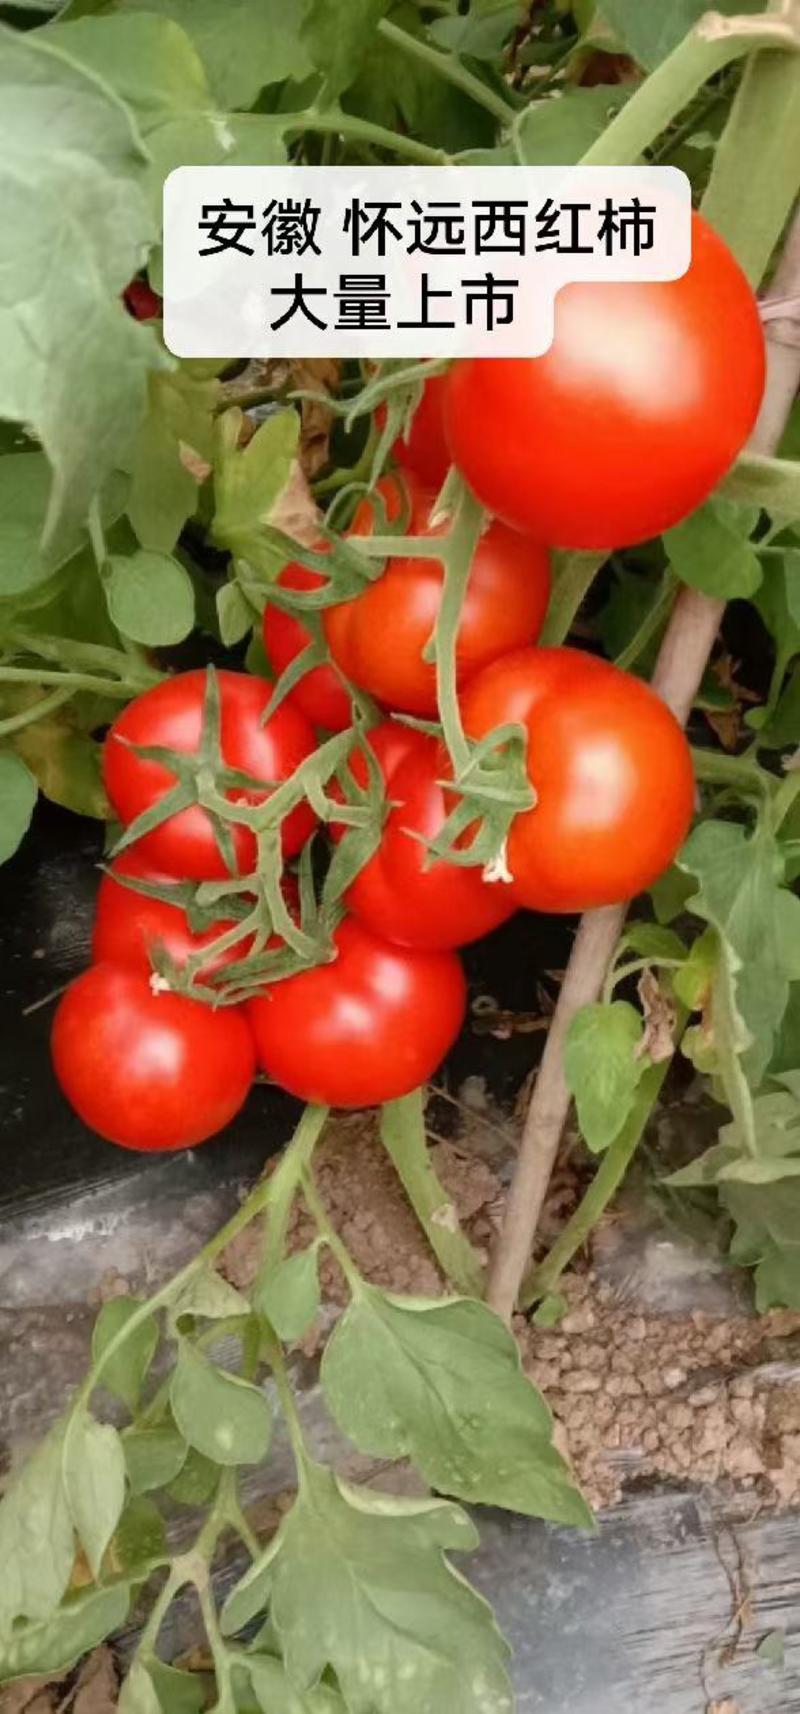 西红柿快上市了。！需要的老板可以提前预订。早定好货多多